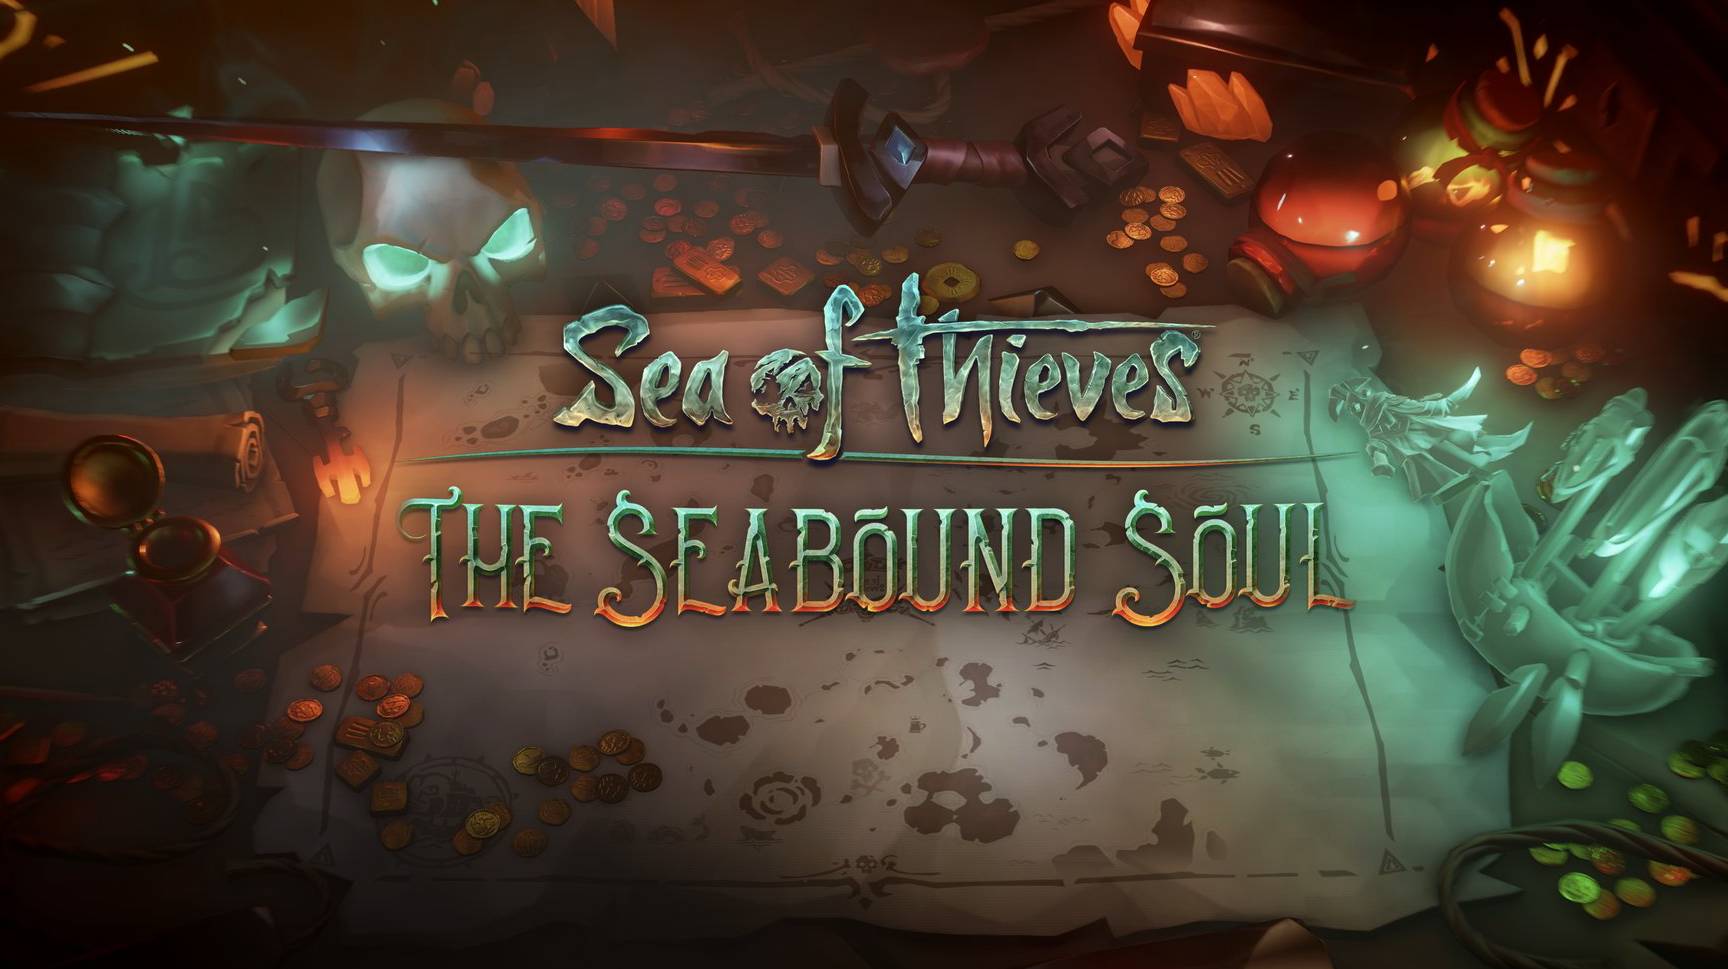 La actualización The Seabound Soul llega con explosiones y fuego a Sea.